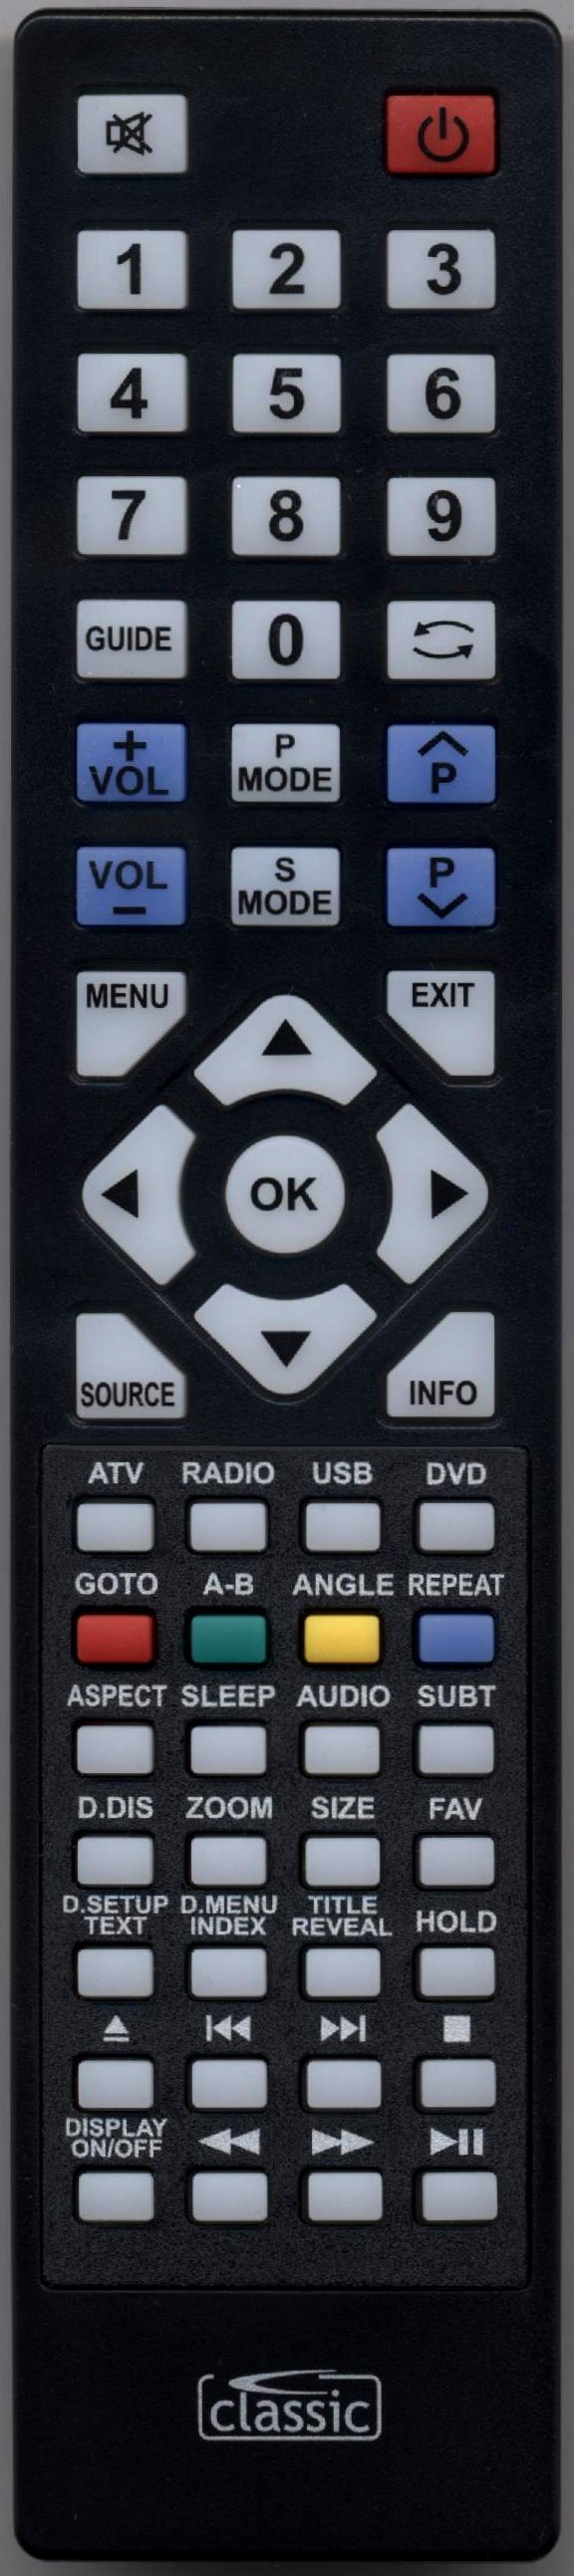 Blaupunkt B32K189TCFHD100 Remote Control